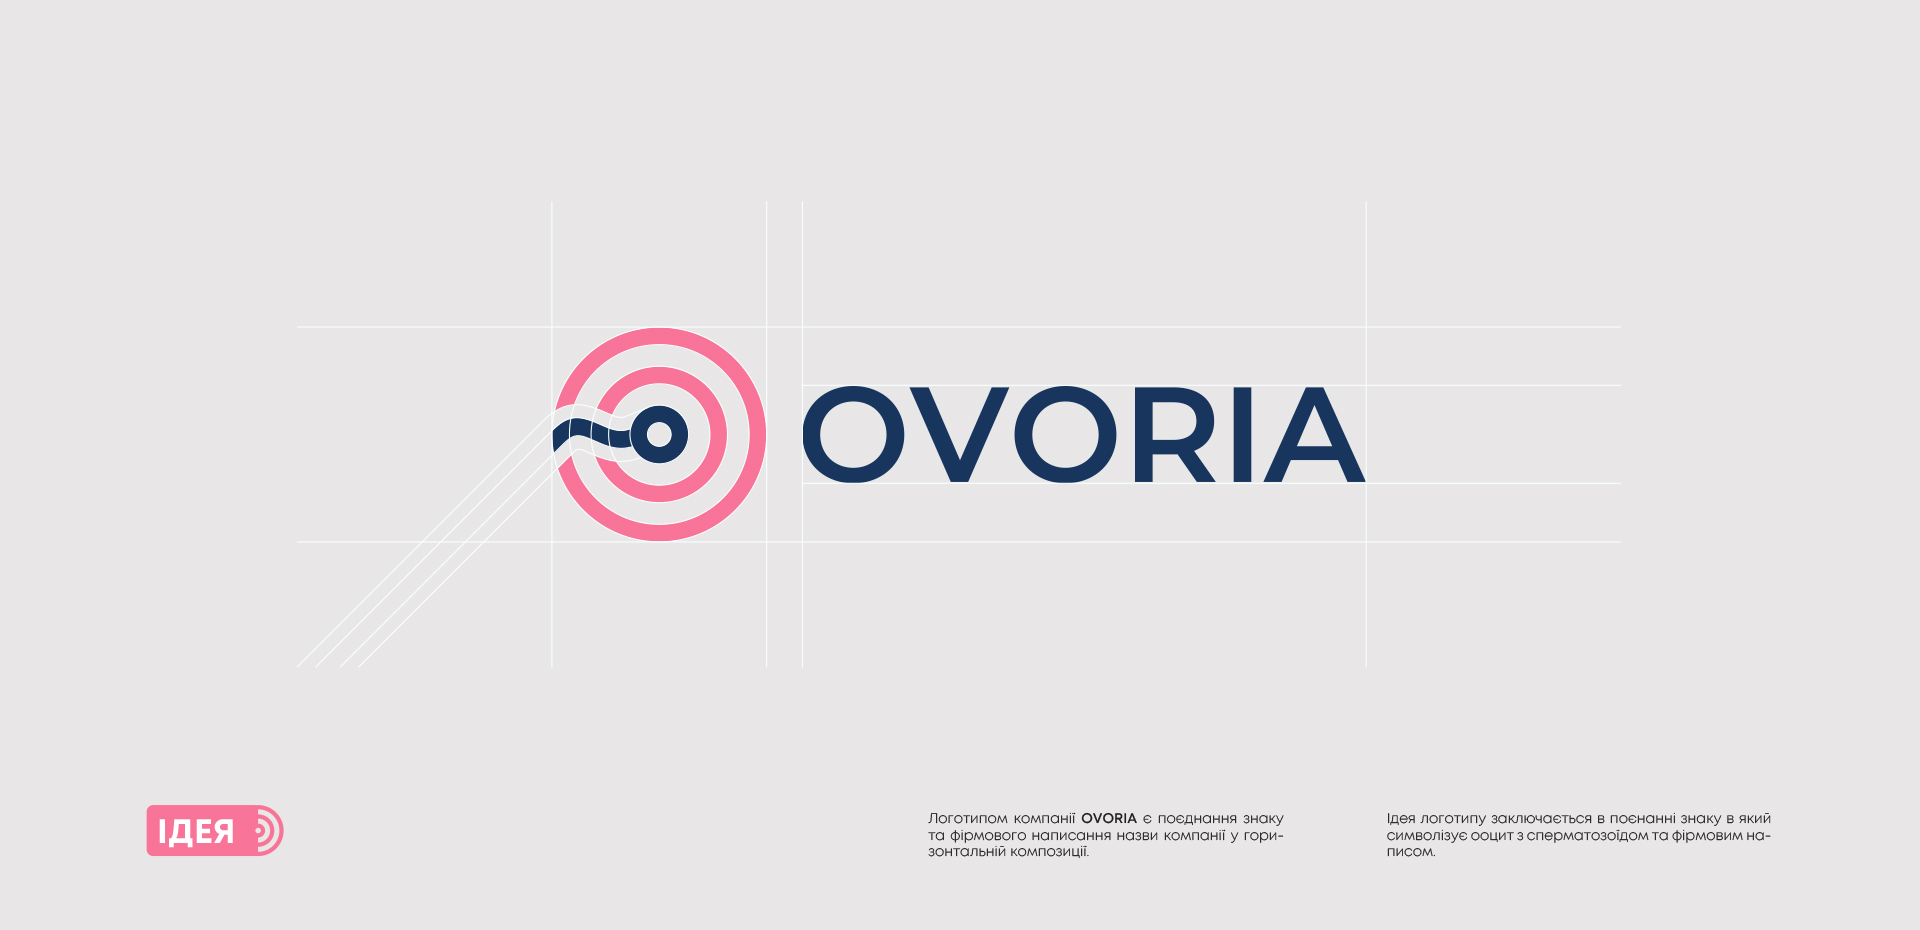 Создание айдентики для международной медицинской компании Ovoria.02 | BrandME